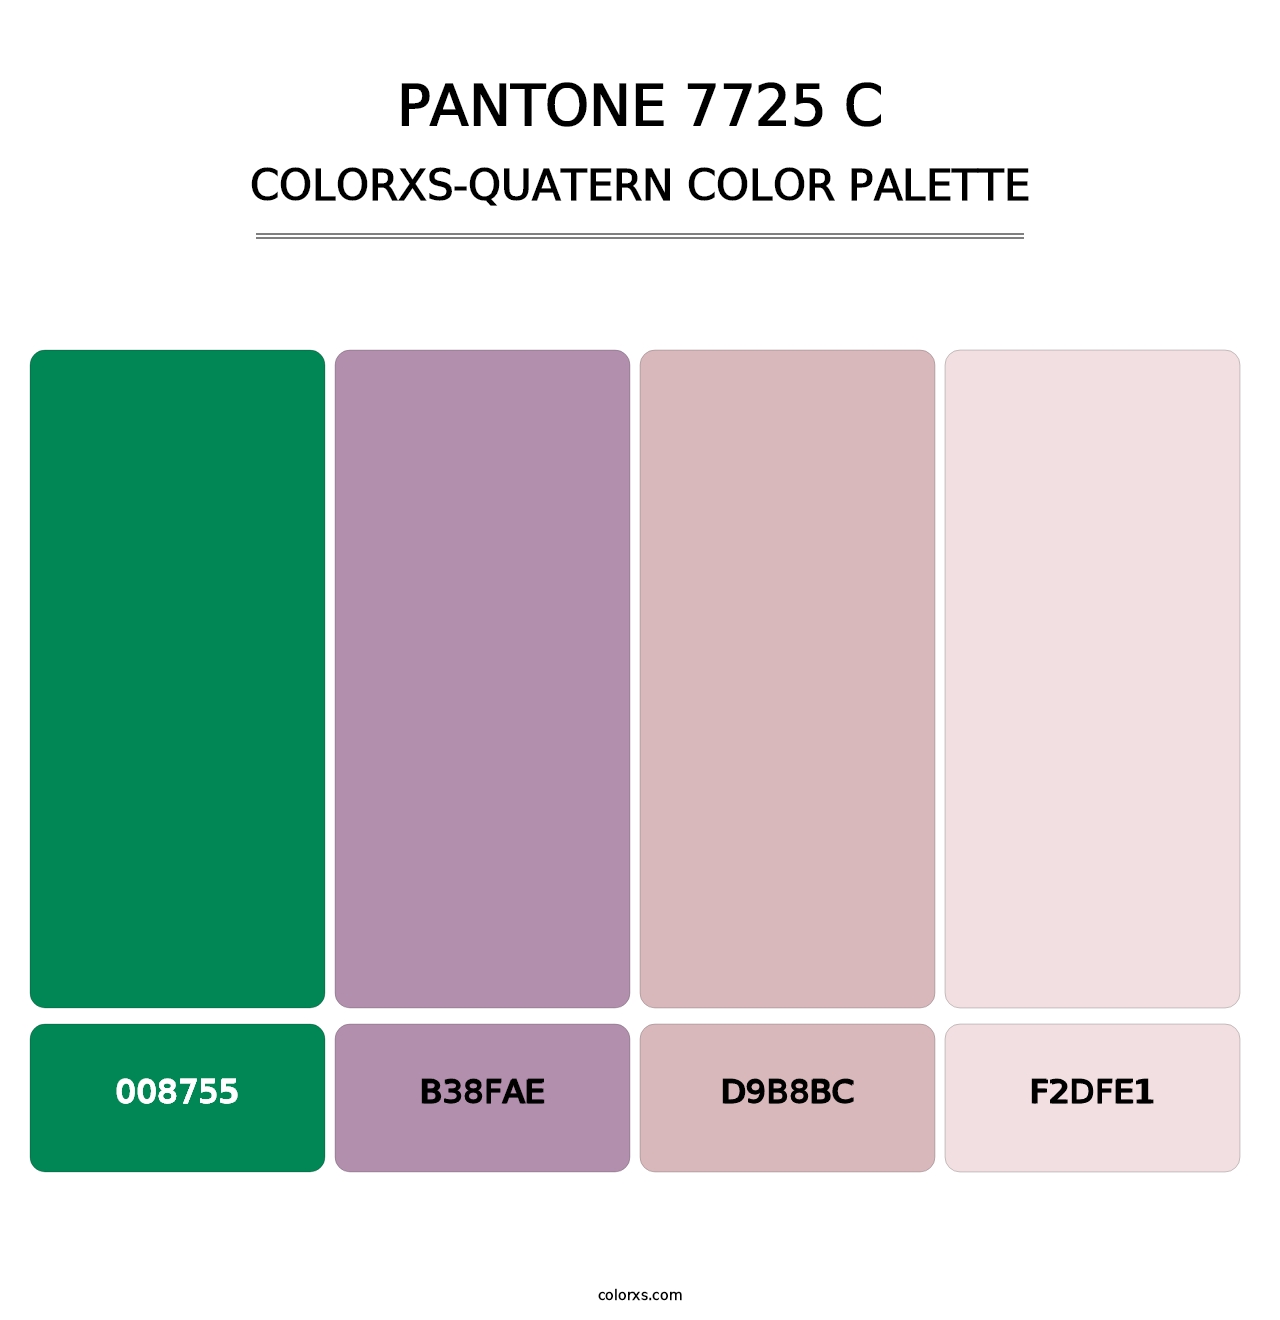 PANTONE 7725 C - Colorxs Quatern Palette